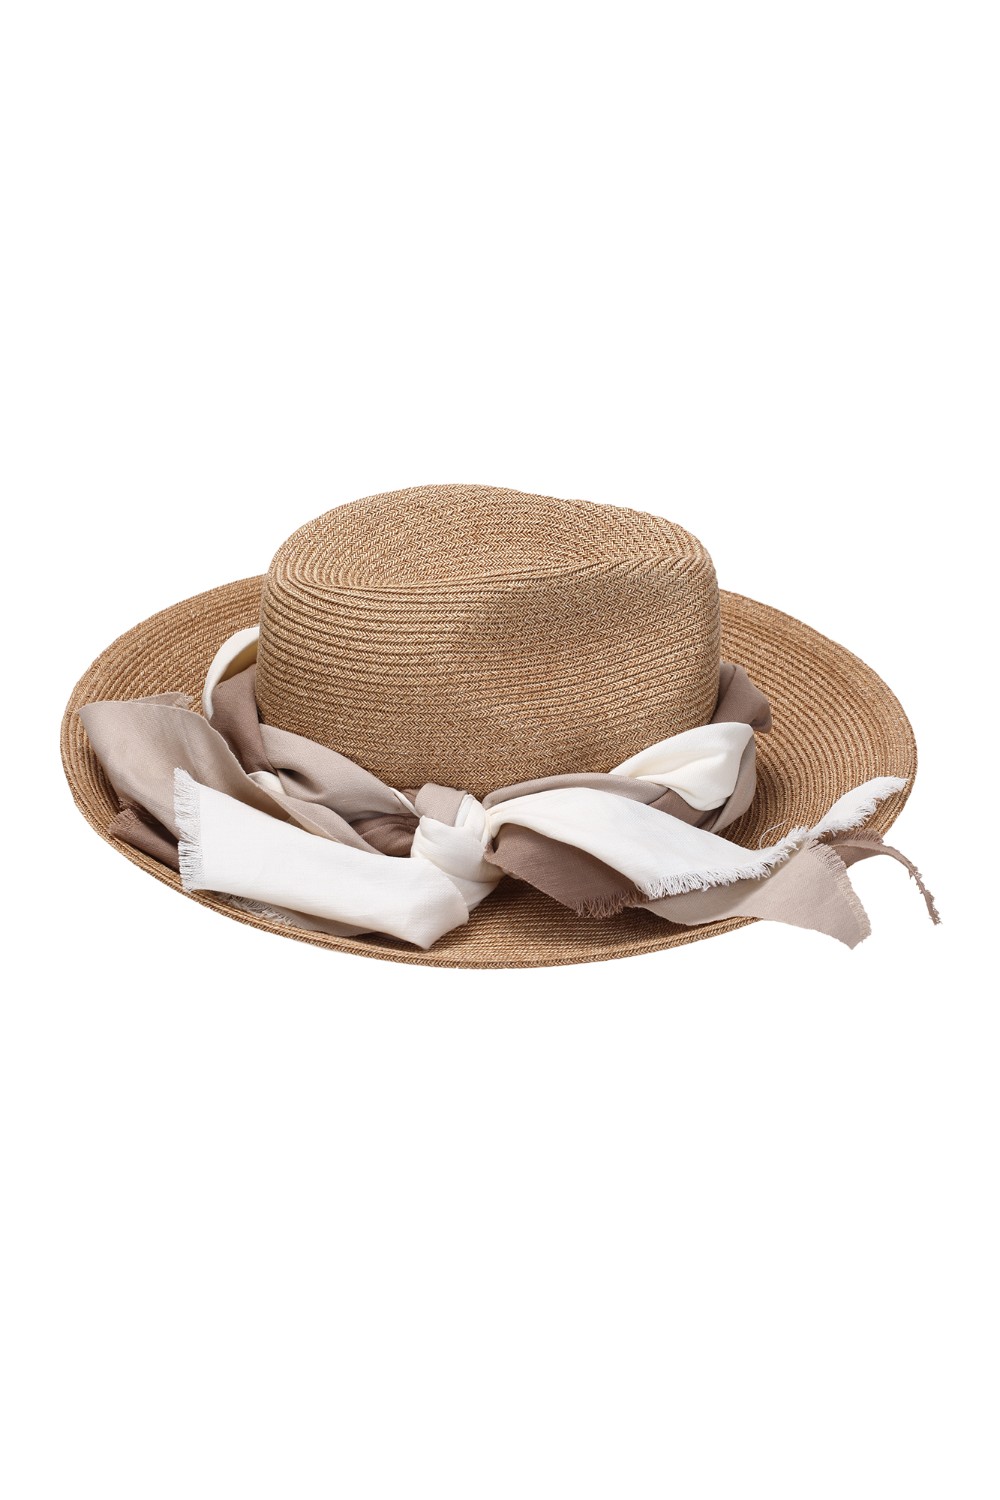 shop ANTONELLI Saldi Cappello: Antonelli cappello a tesa larga con foulard.
Composizione: 75% carta 25% cotone.
Fabbricato in Italia.. KILLIAM E0666 6203-125 number 7210093